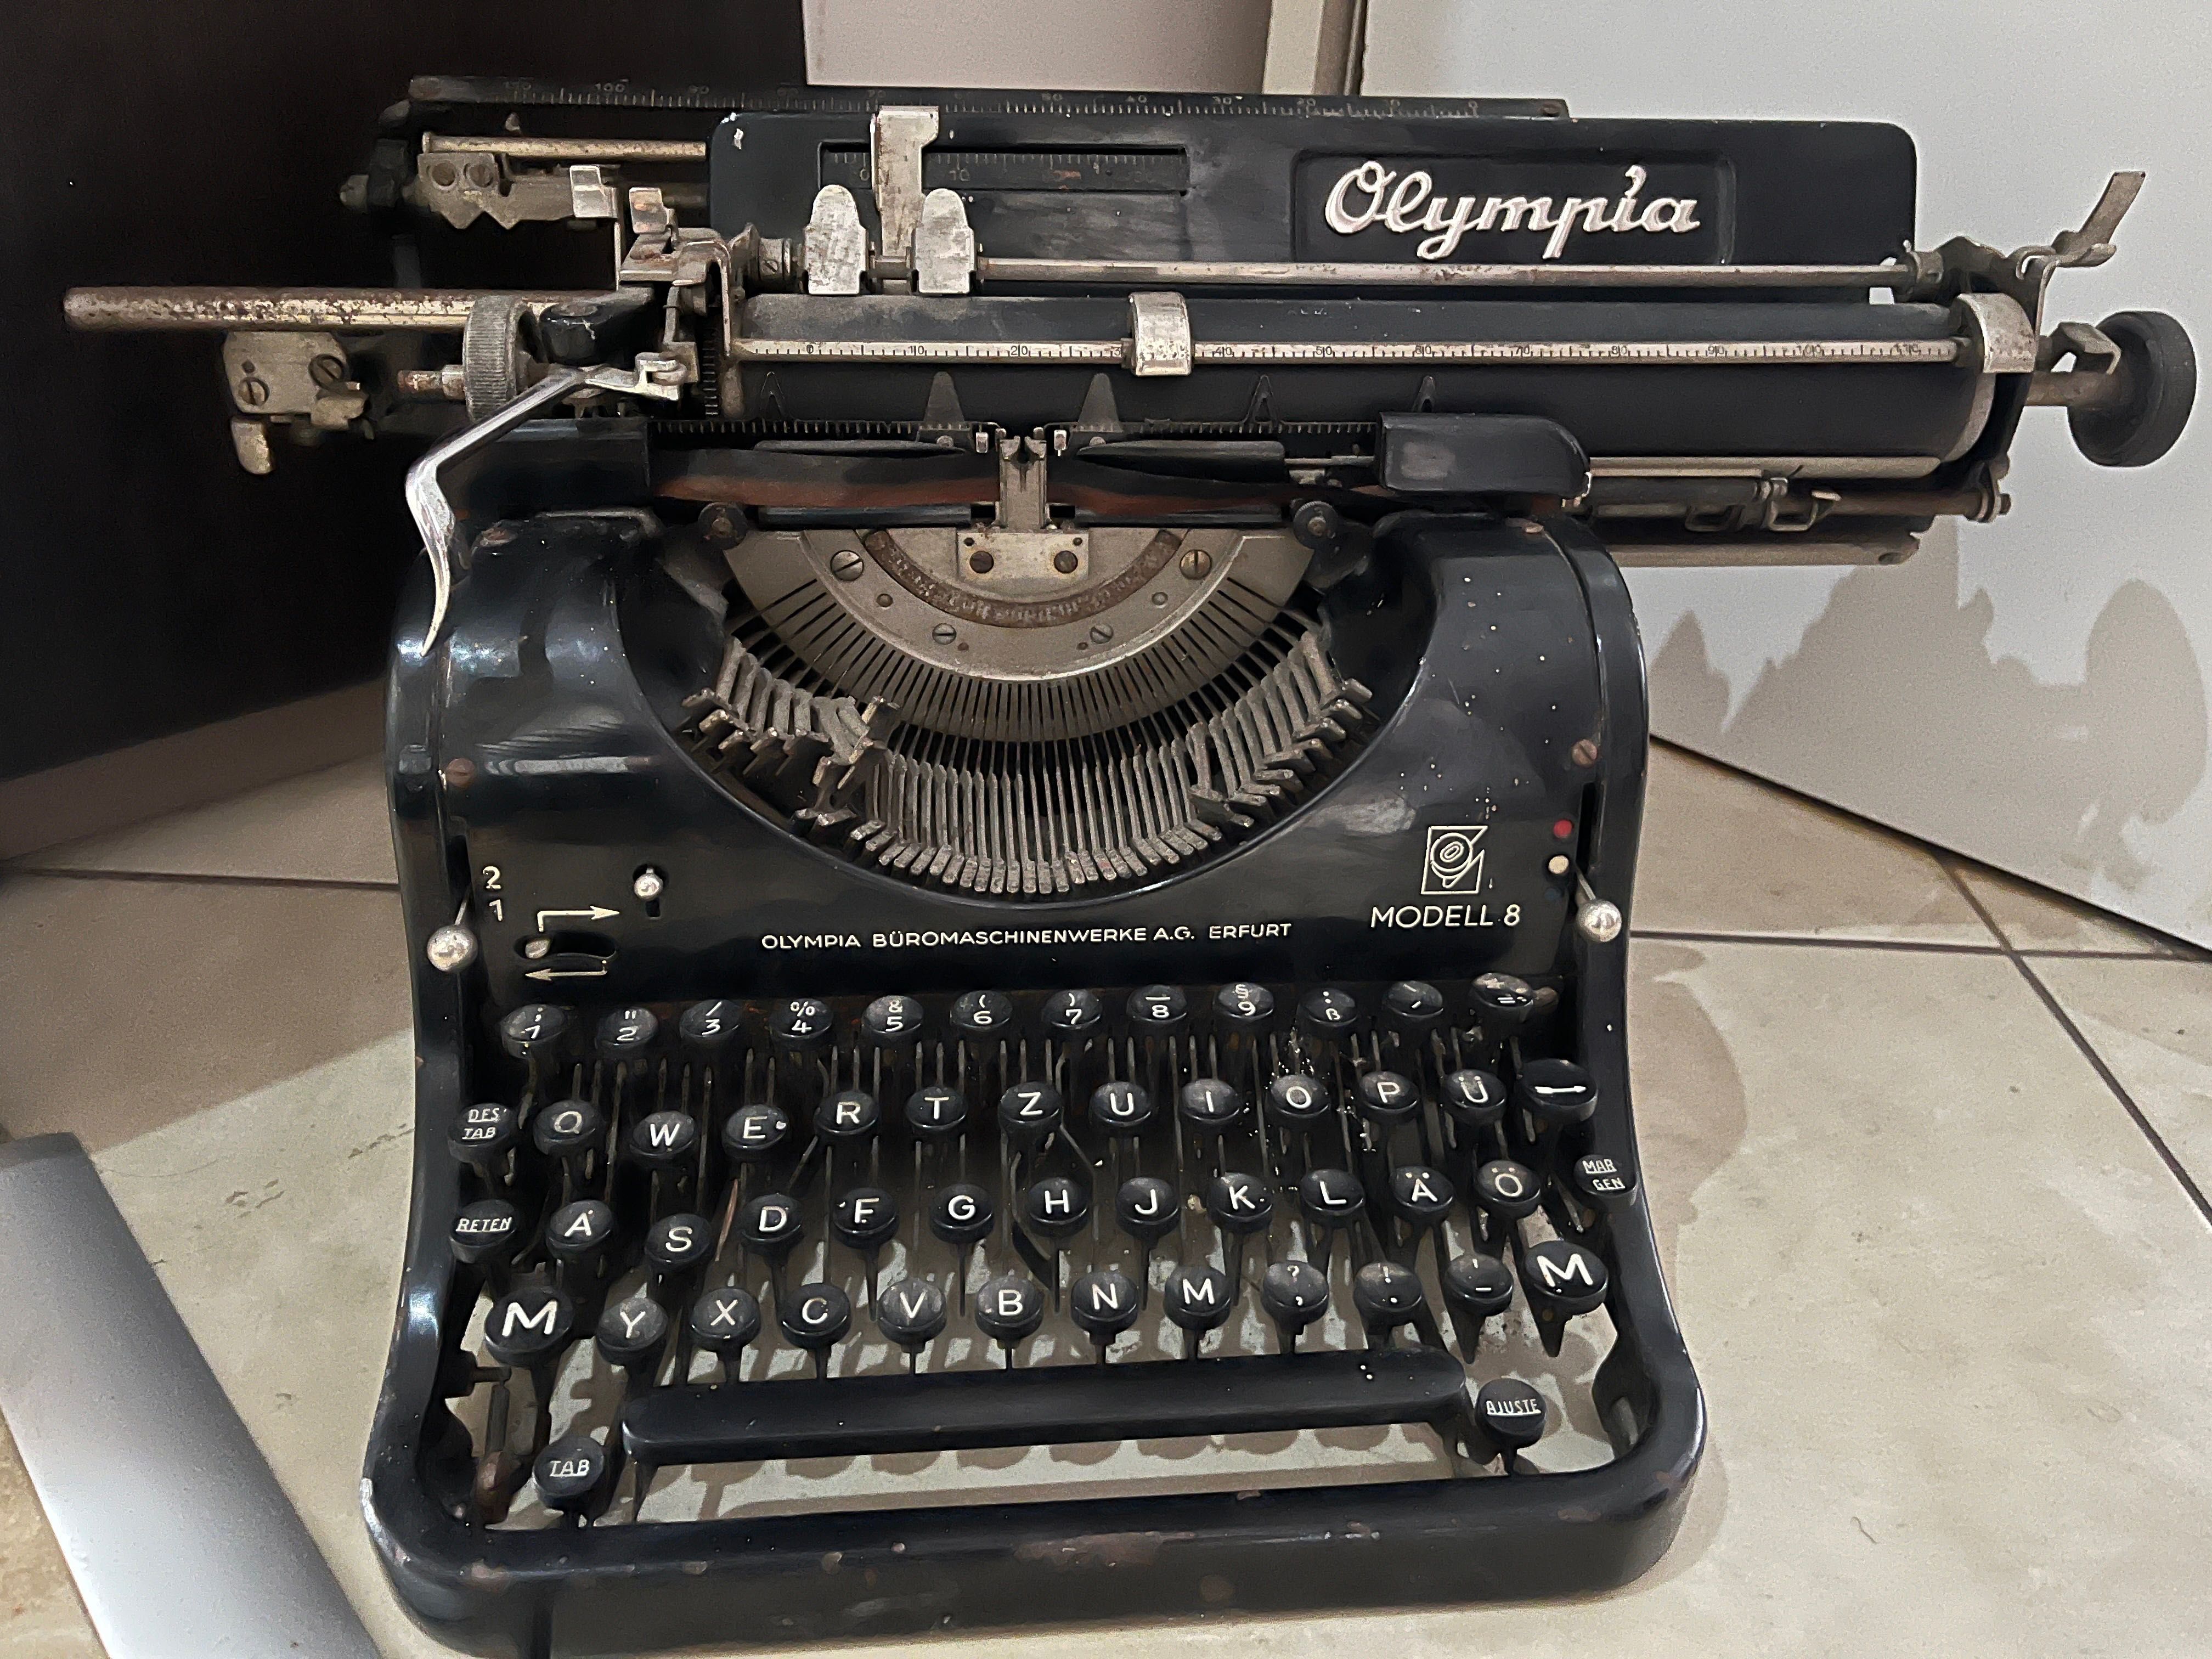 Maszyna do pisania Olympia modell 8